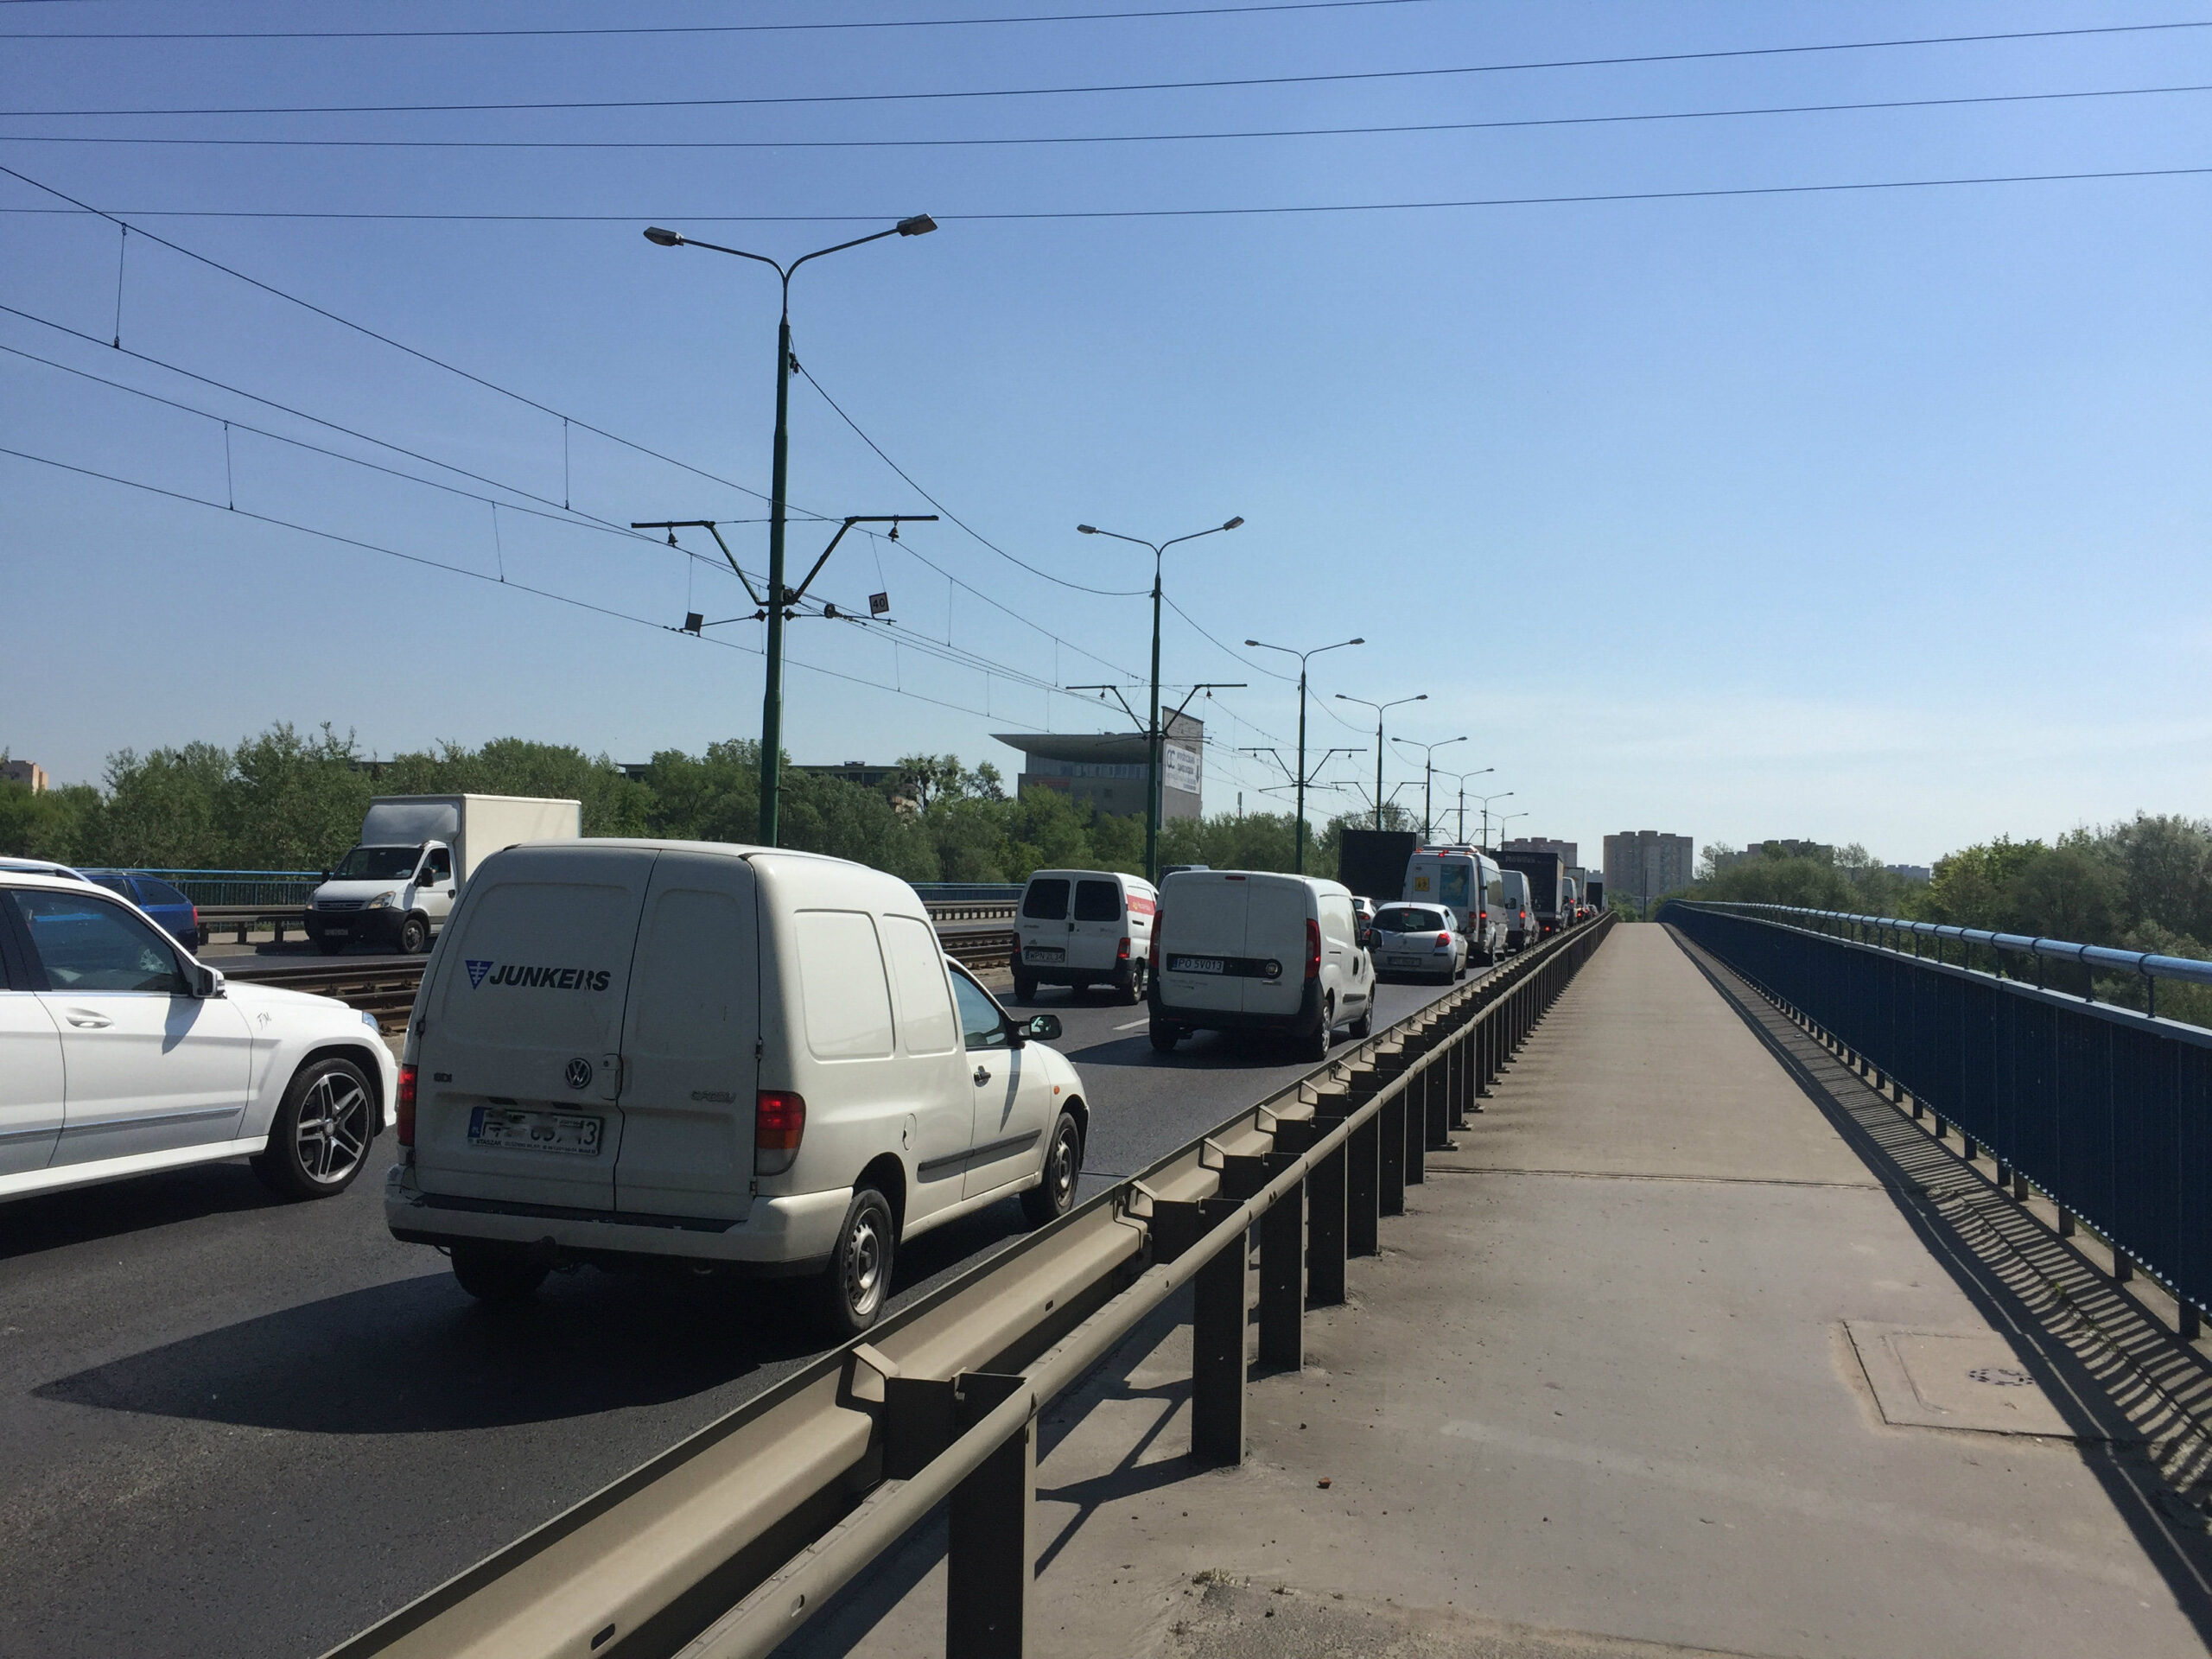 Pechowy most Przemysła I – awaria samochodu i kolizja, czyli korki na obu nitkach